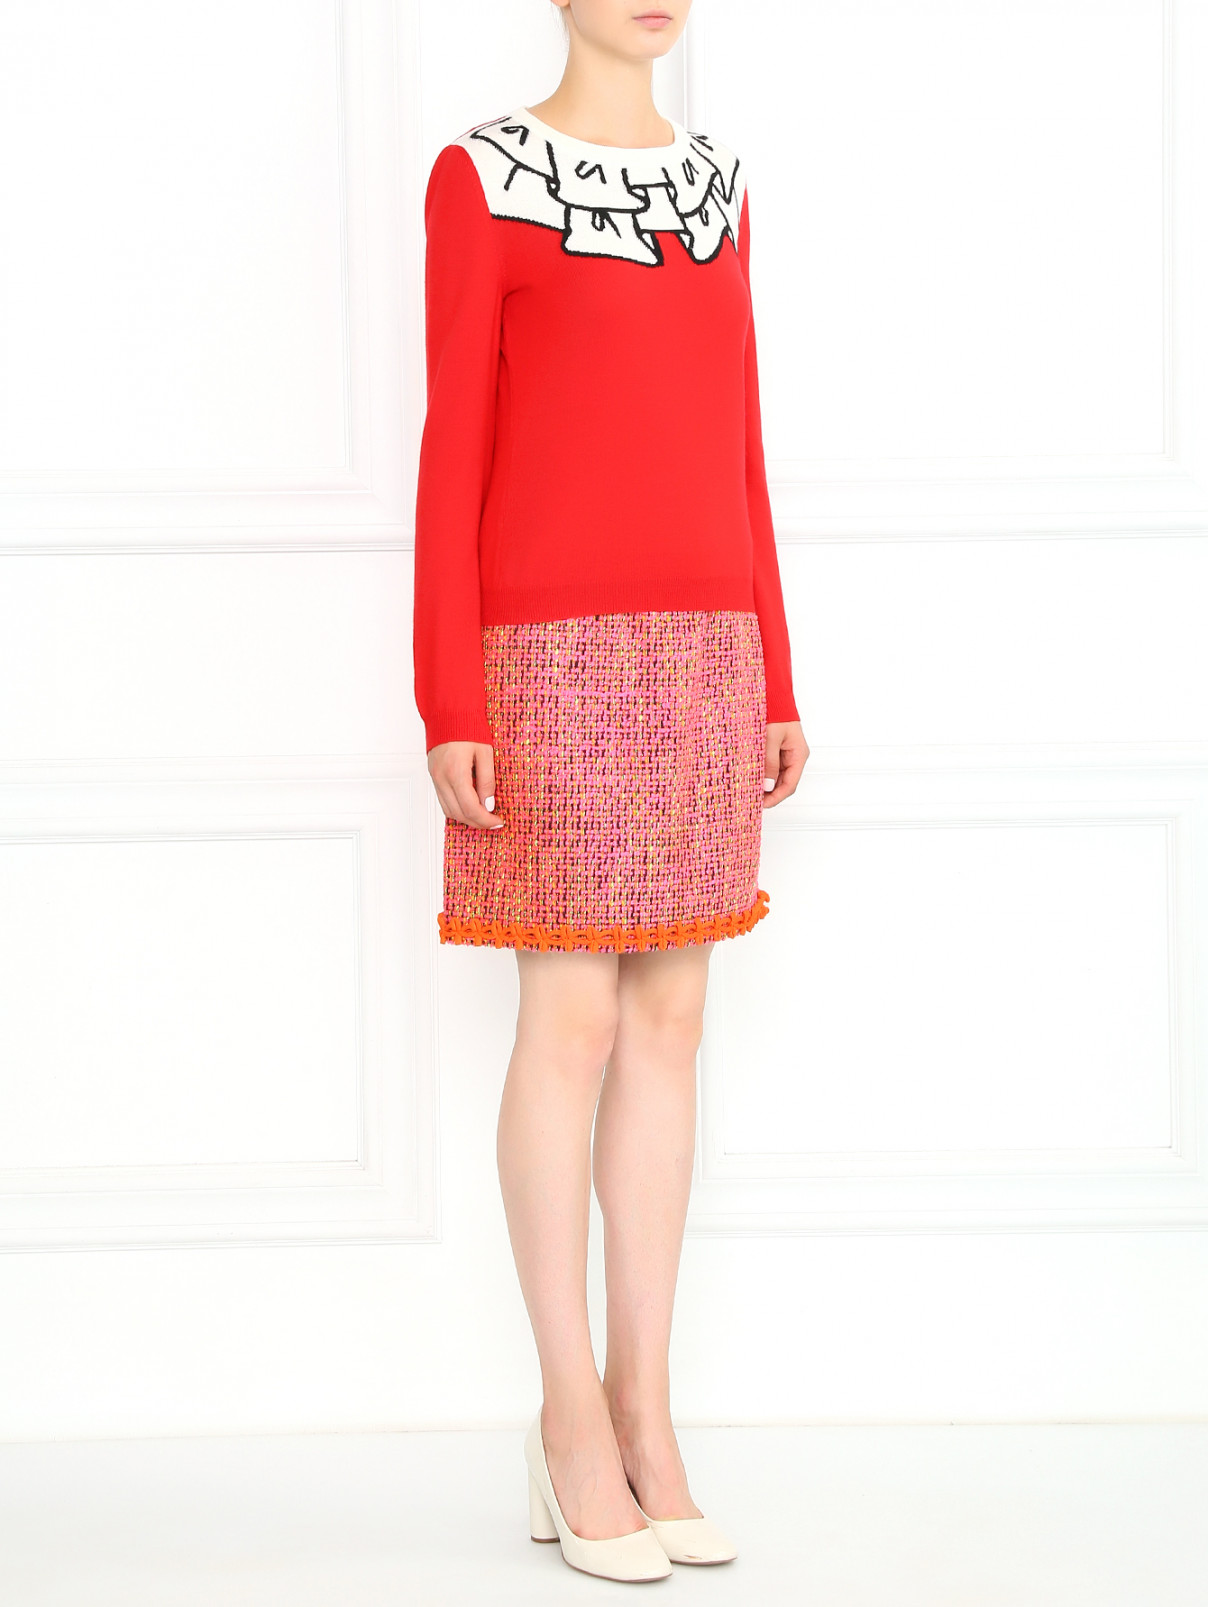 Джемпер из шерсти с узором Moschino Boutique  –  Модель Общий вид  – Цвет:  Красный